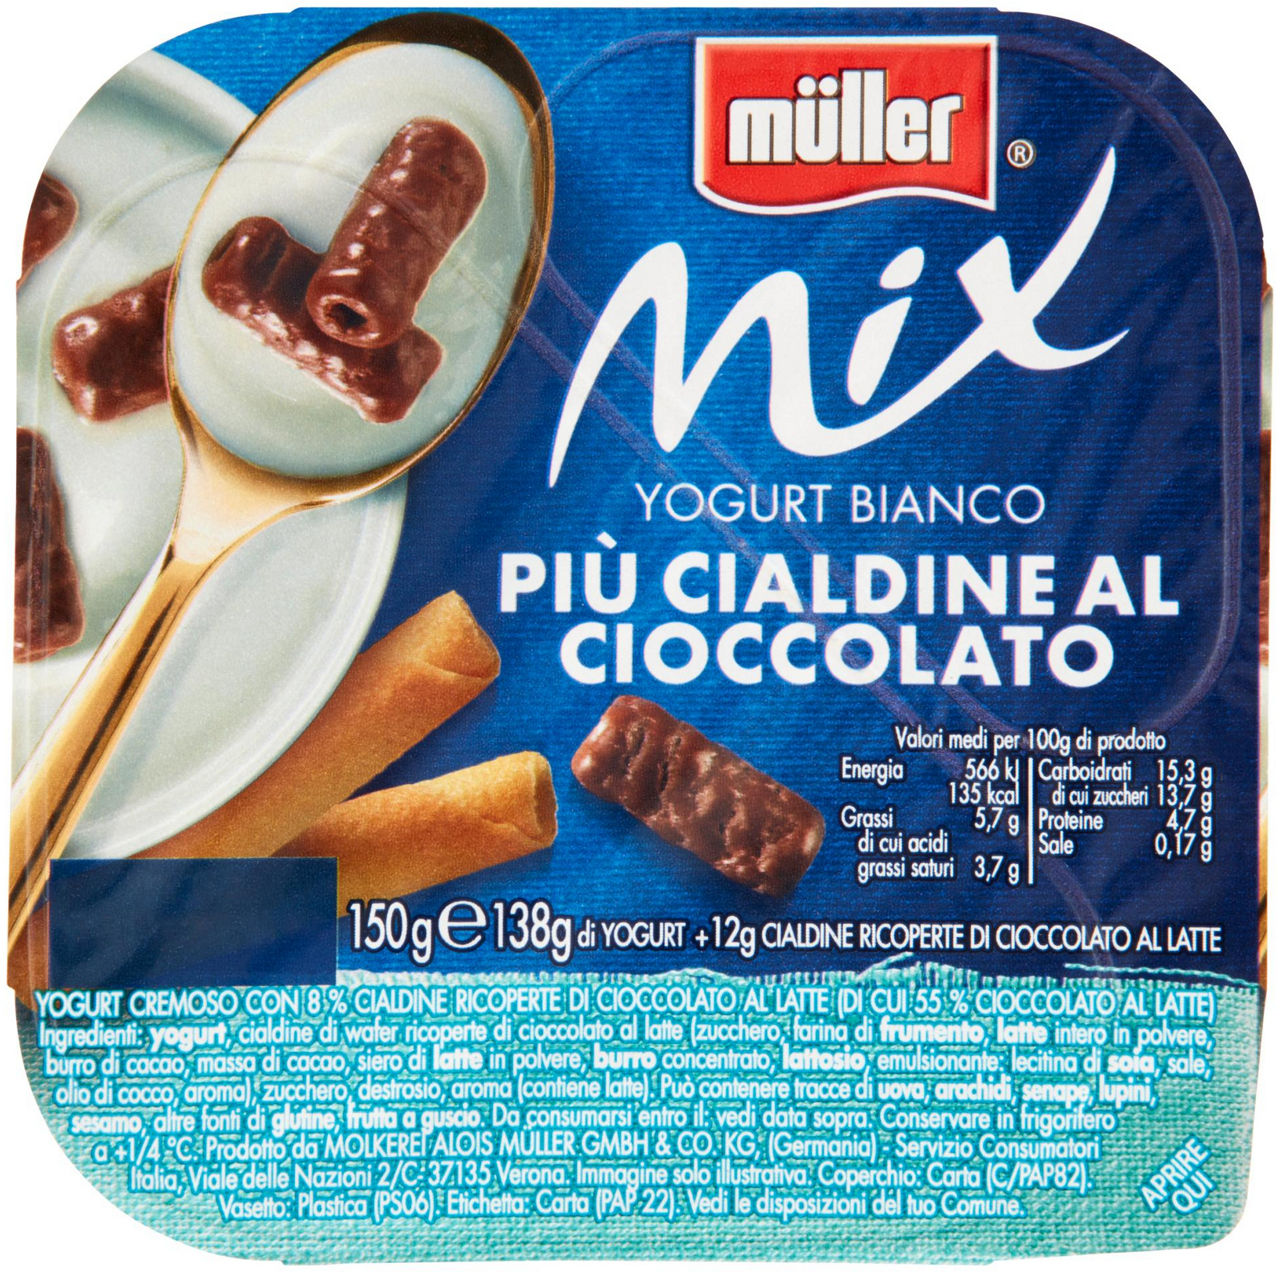 Yogurt mix bianco più cialdine al cioccolato muller g 150